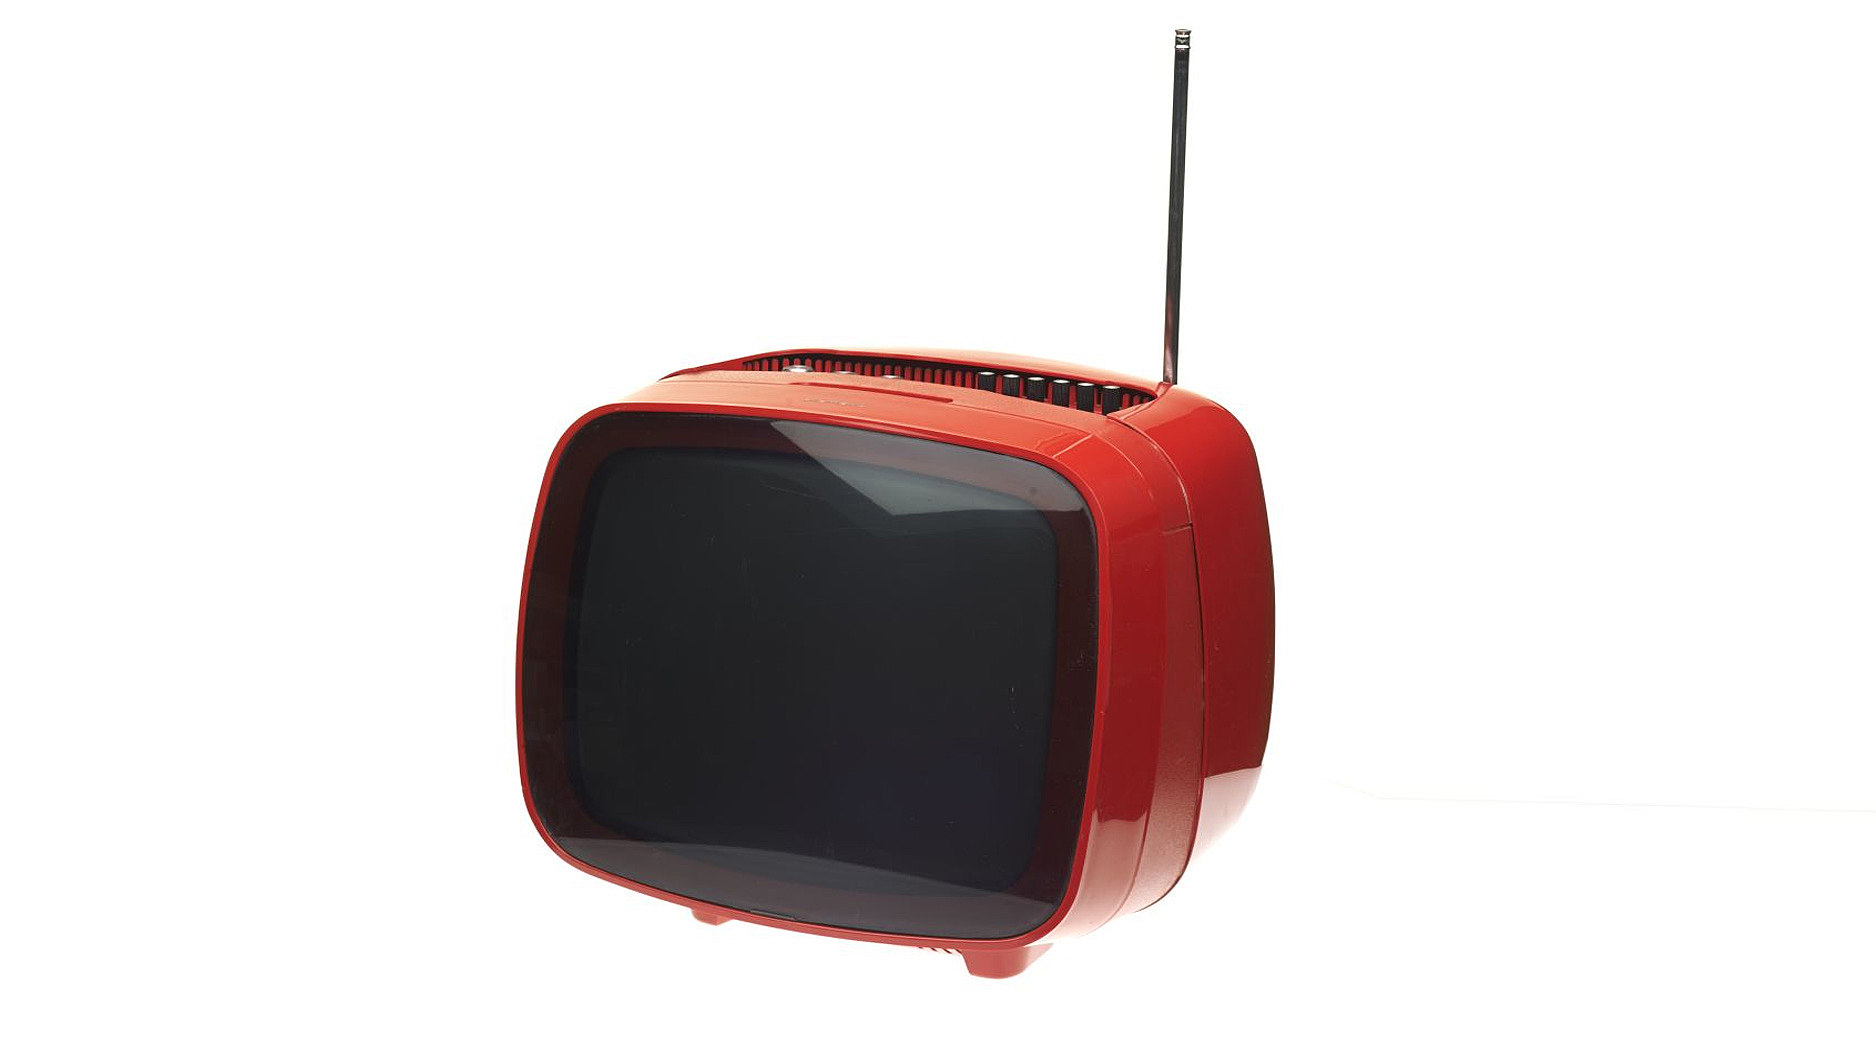 orangefarbener, kleiner runder Fernseher Siemens Alpha 31 aus den 1970er Jahren